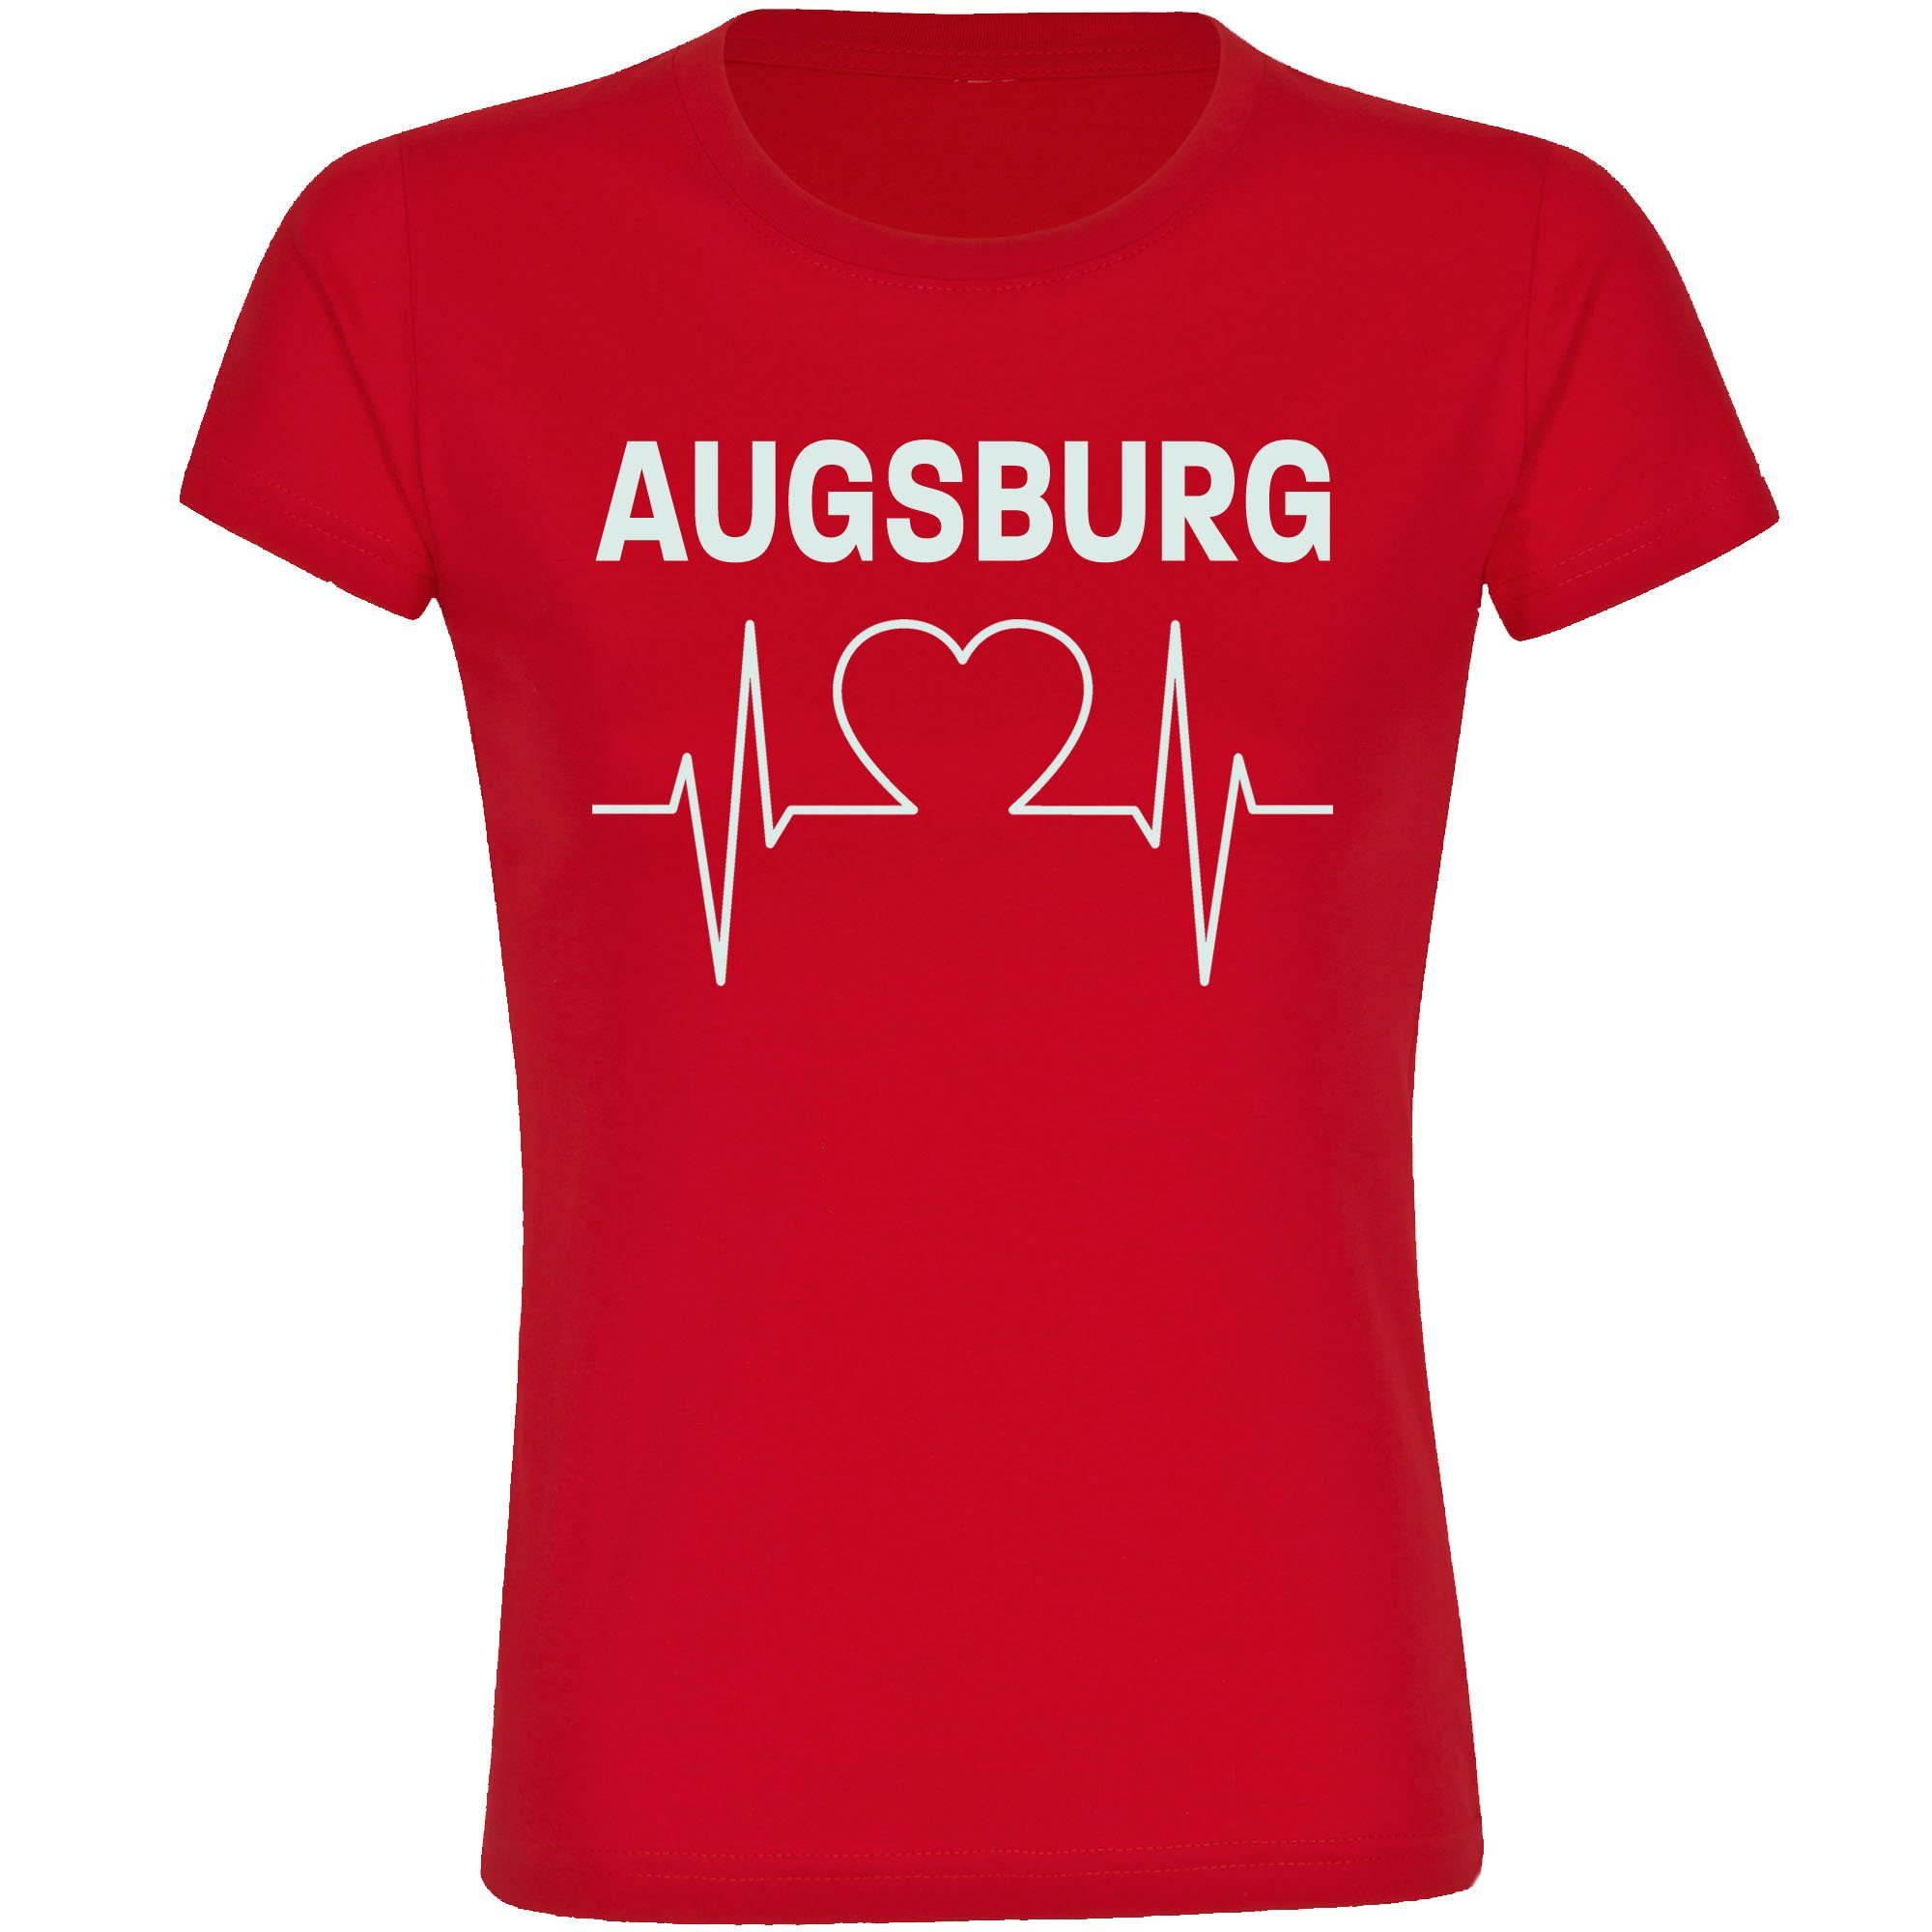 multifanshop T-Shirt Damen Augsburg - Herzschlag - Frauen